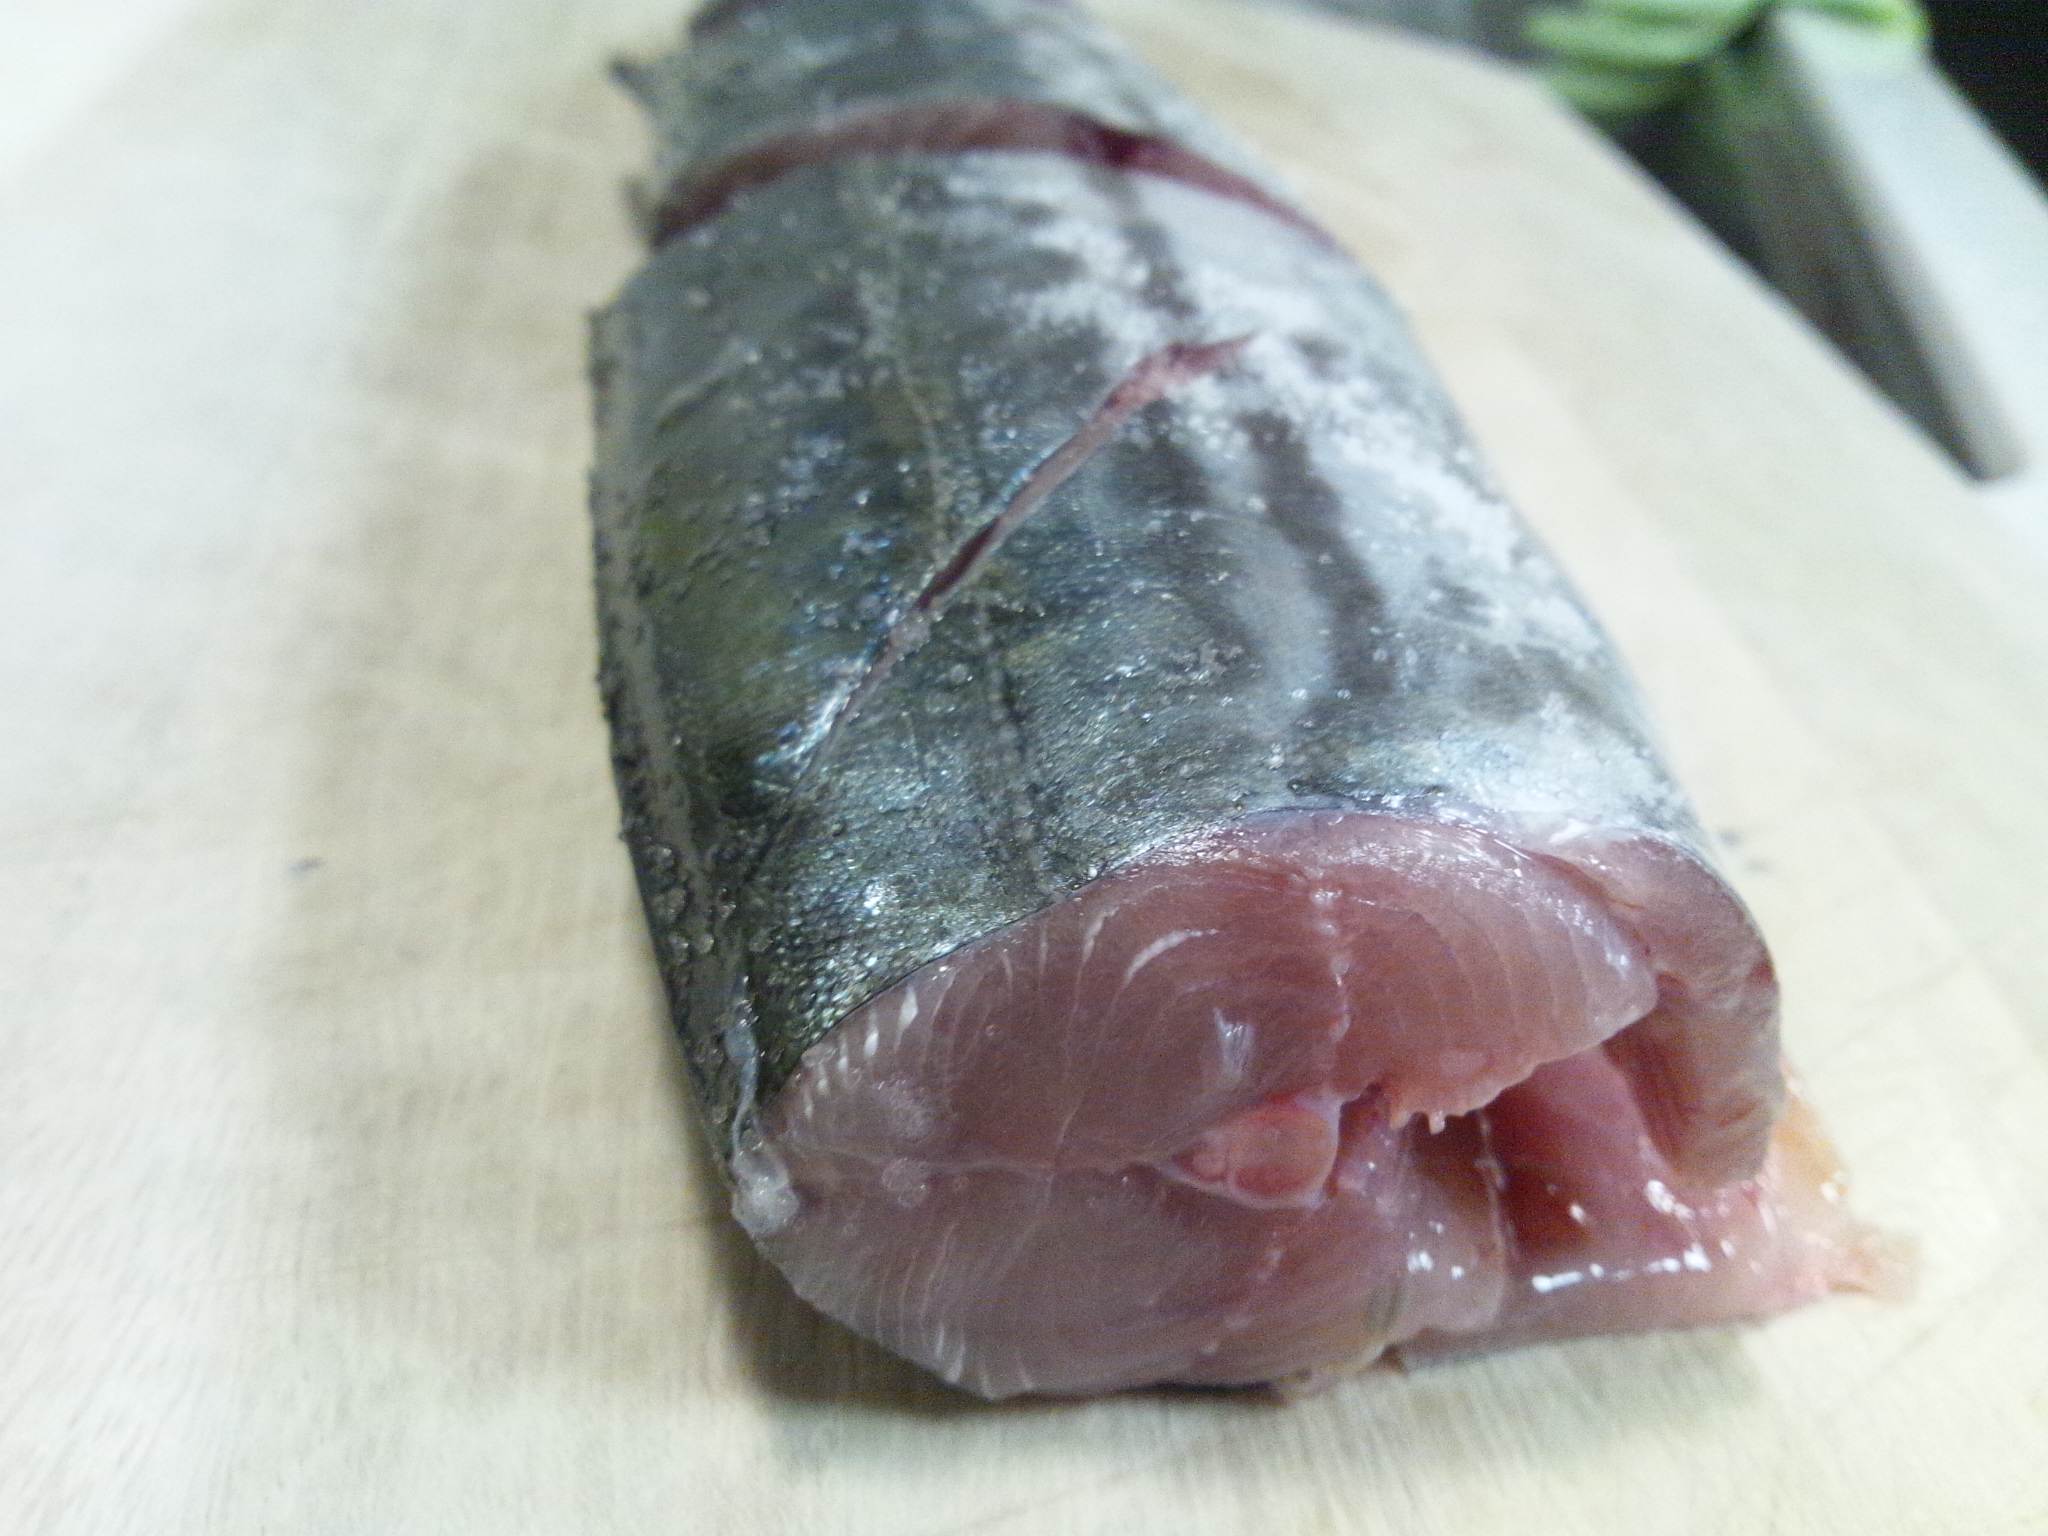 バタバタ うちめし Nagomi S Plate サゴシの塩焼き 魚の骨せんべい